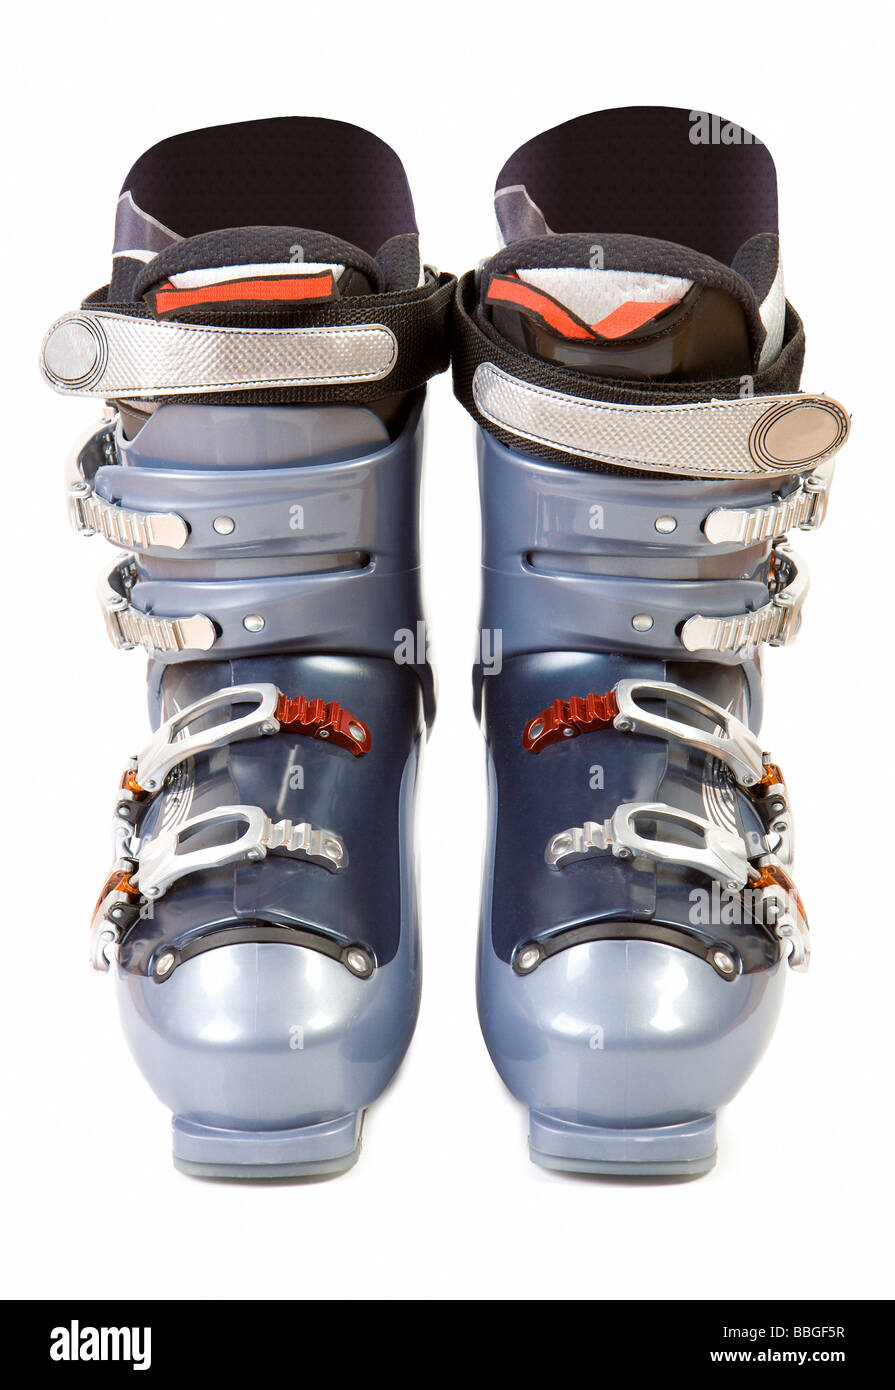 Modernen Skilaufs Stiefel Isolat auf weiße Stockfoto